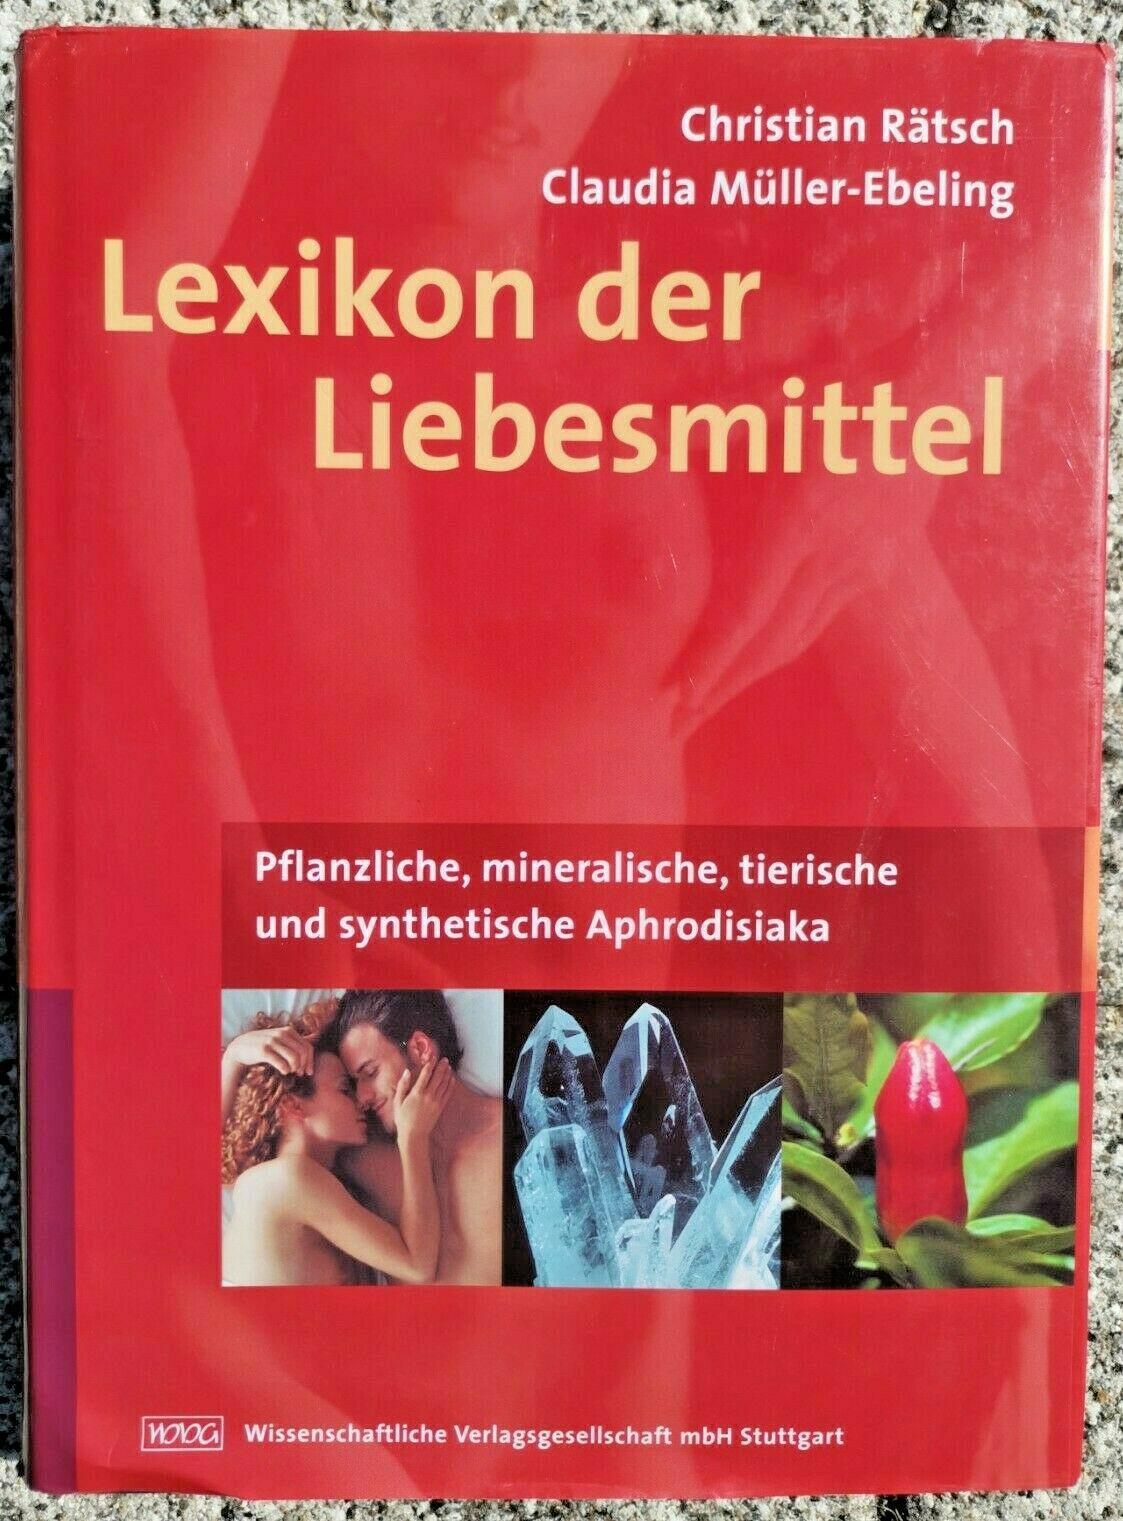 Lexikon der Liebesmittel: Pflanzliche, mineralische, tierische und synthetische Aphrodisiaka